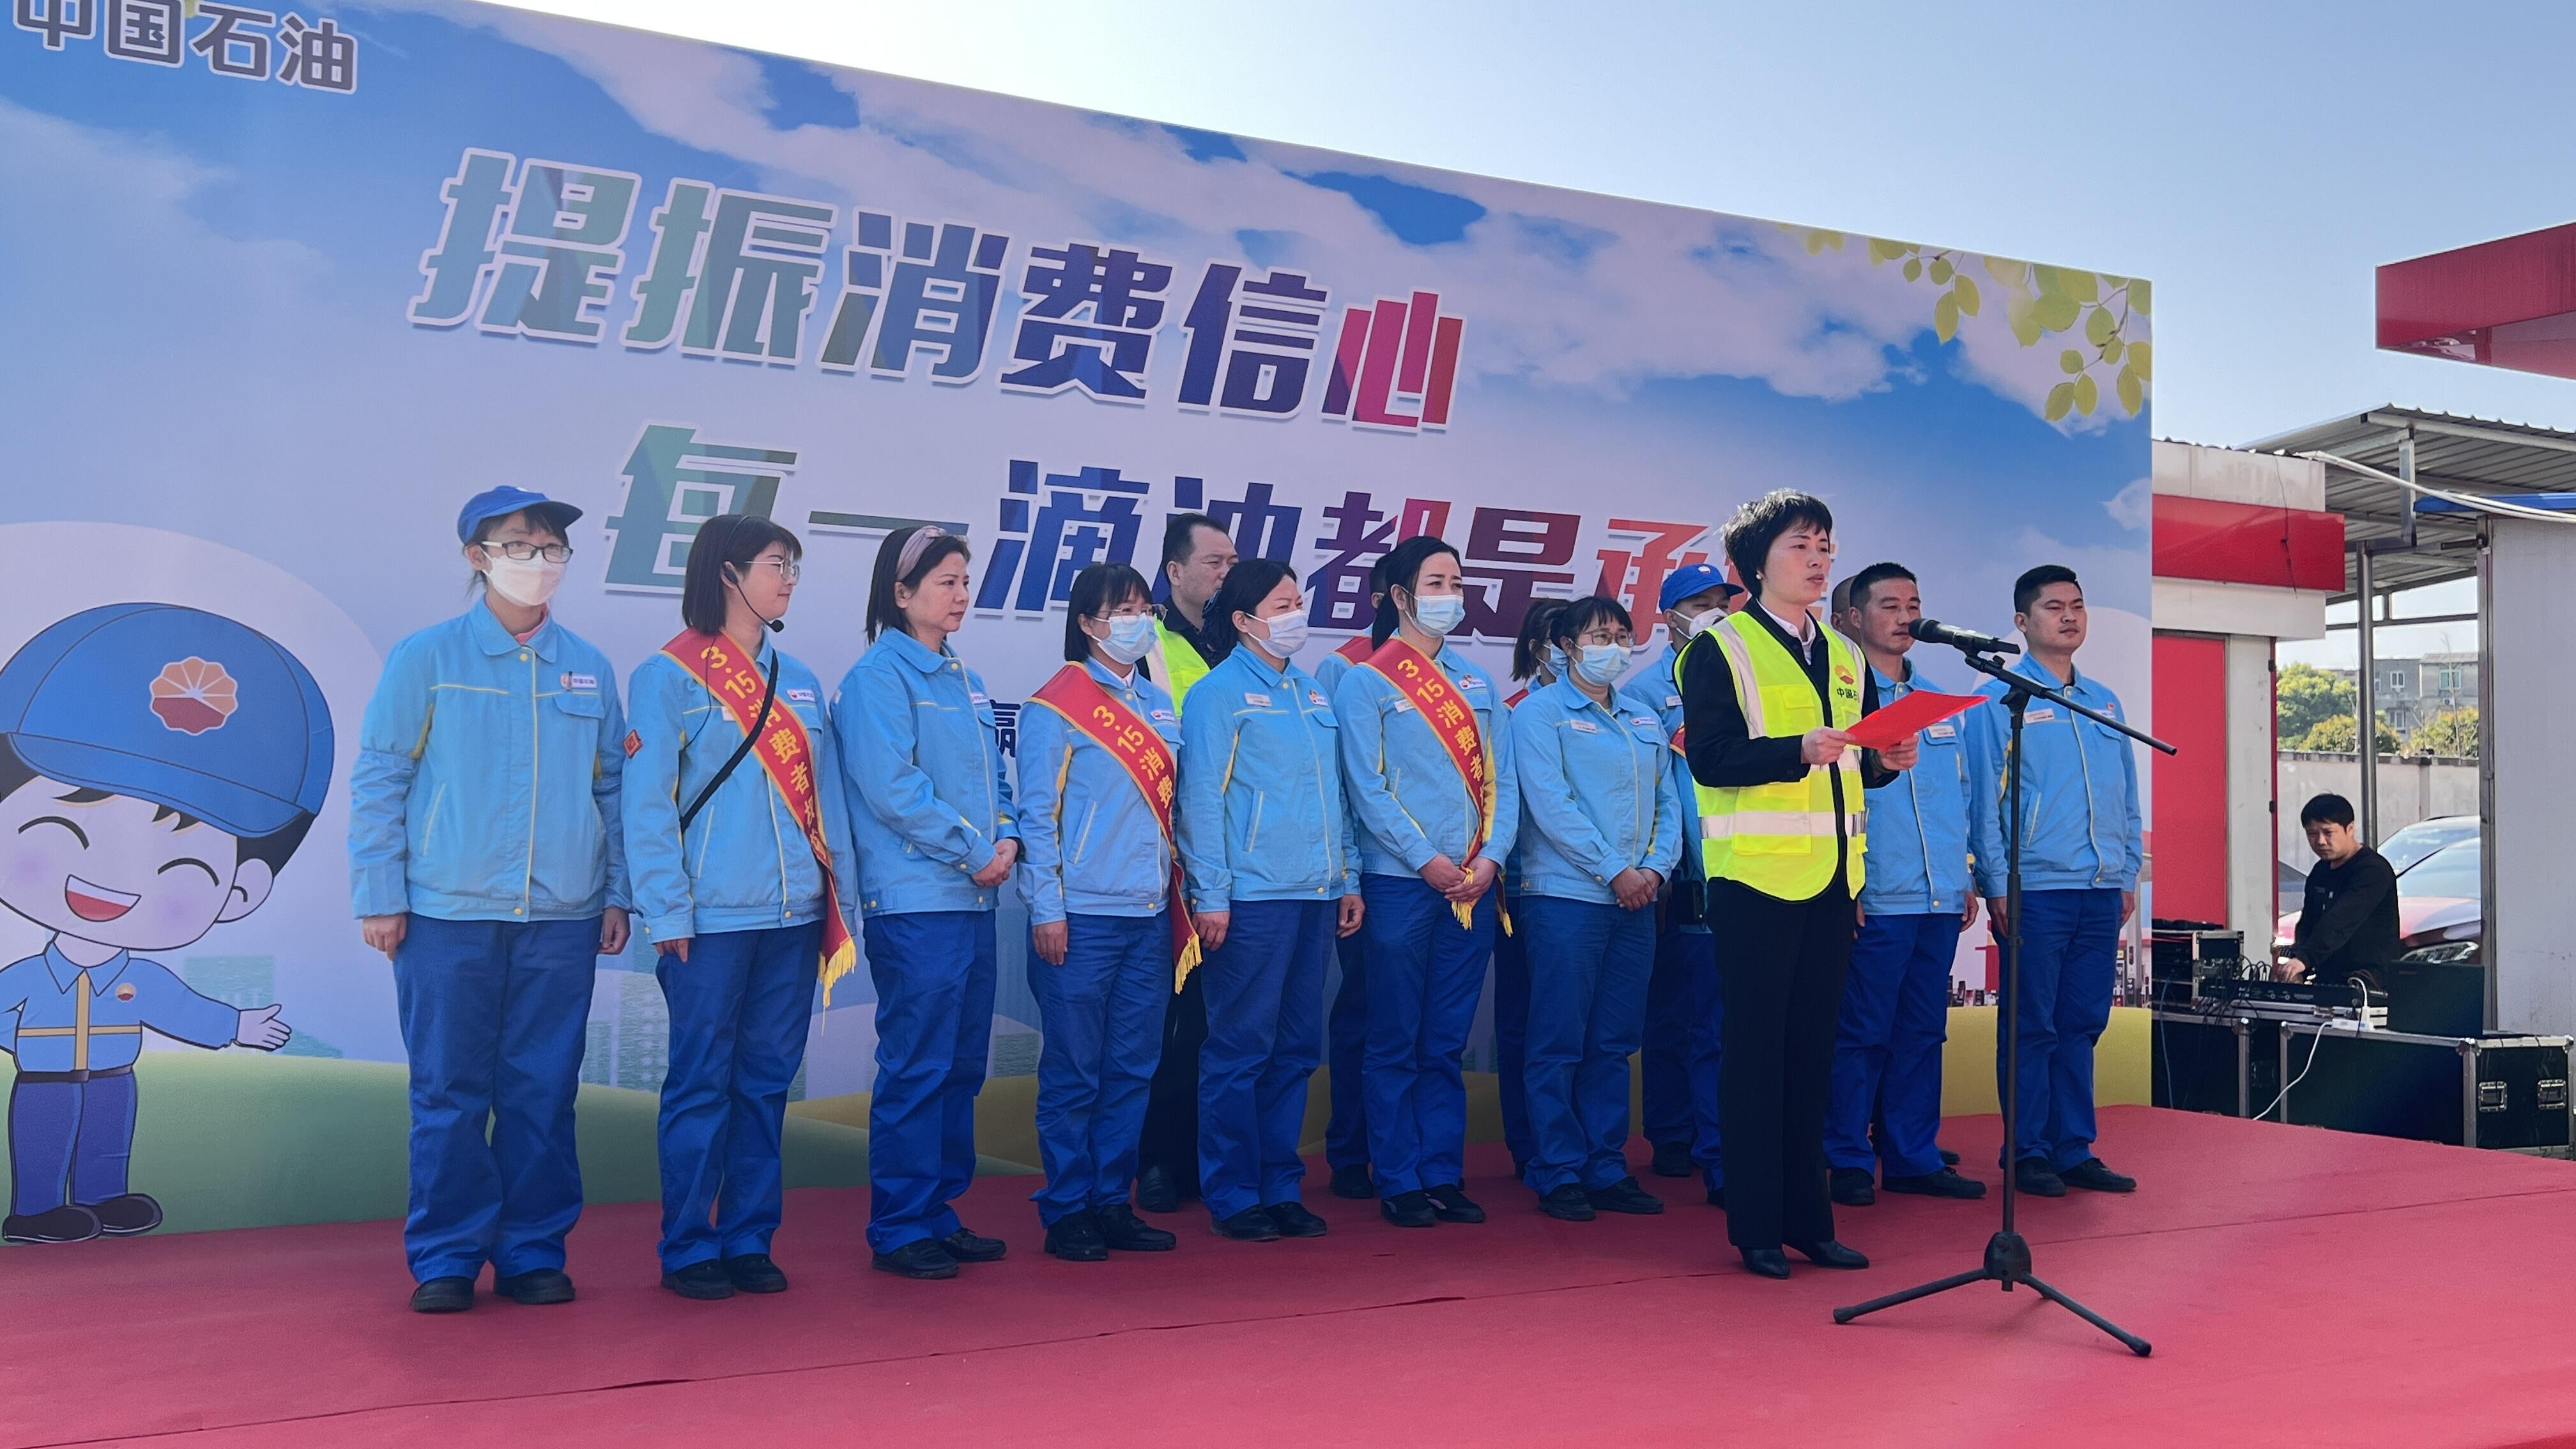 中国石油湖南长沙销售分公司工作人员向社会作出诚信计量承诺。　